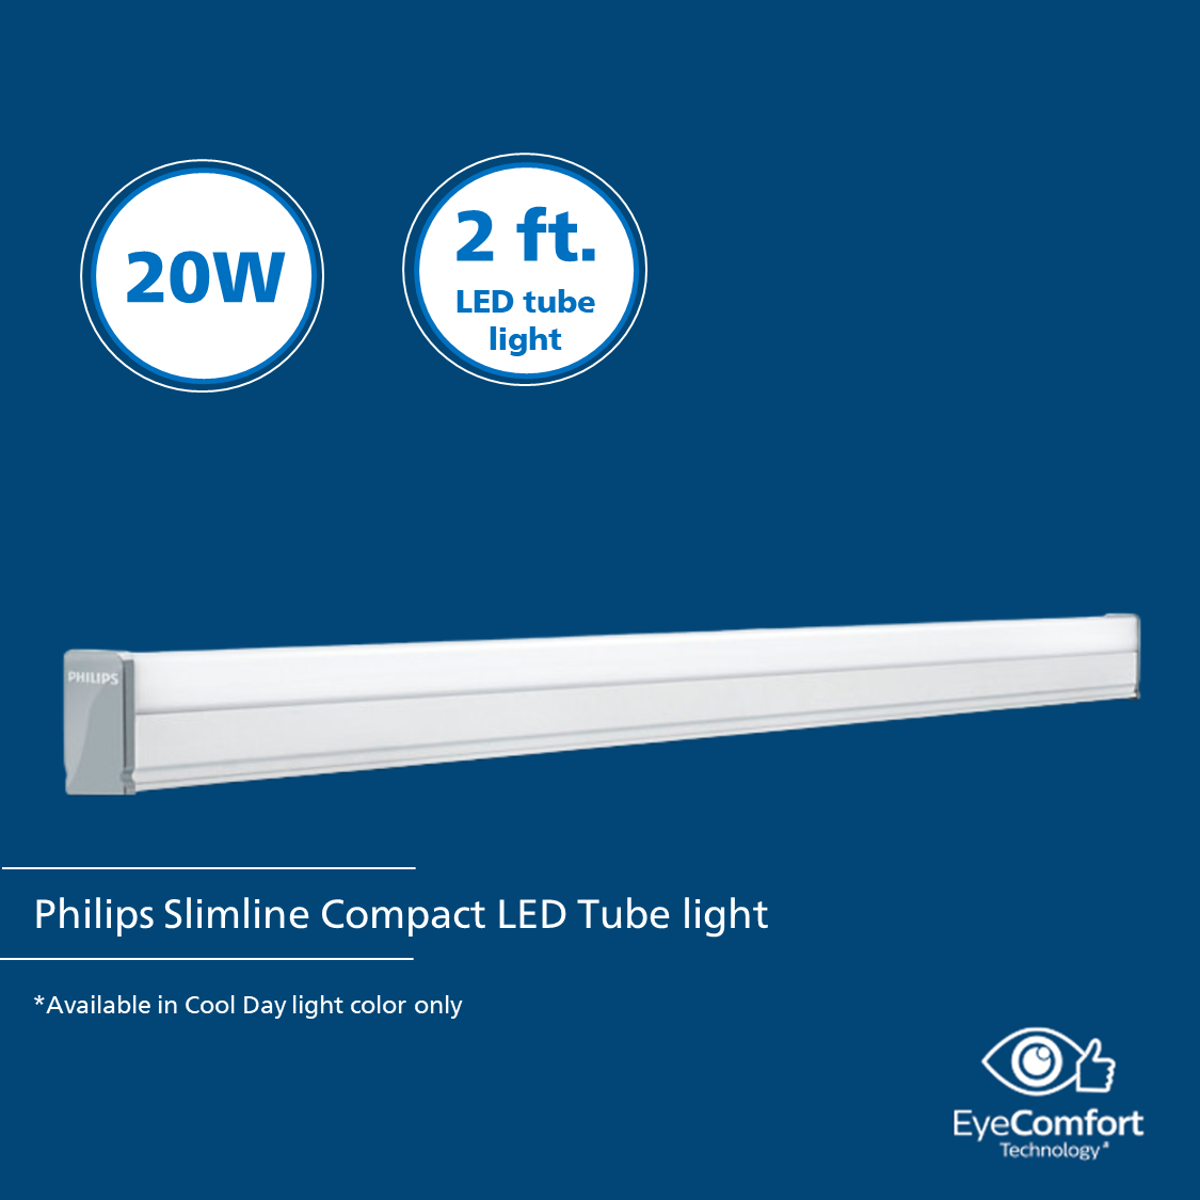 Philips Slimline Compact LED Tube light